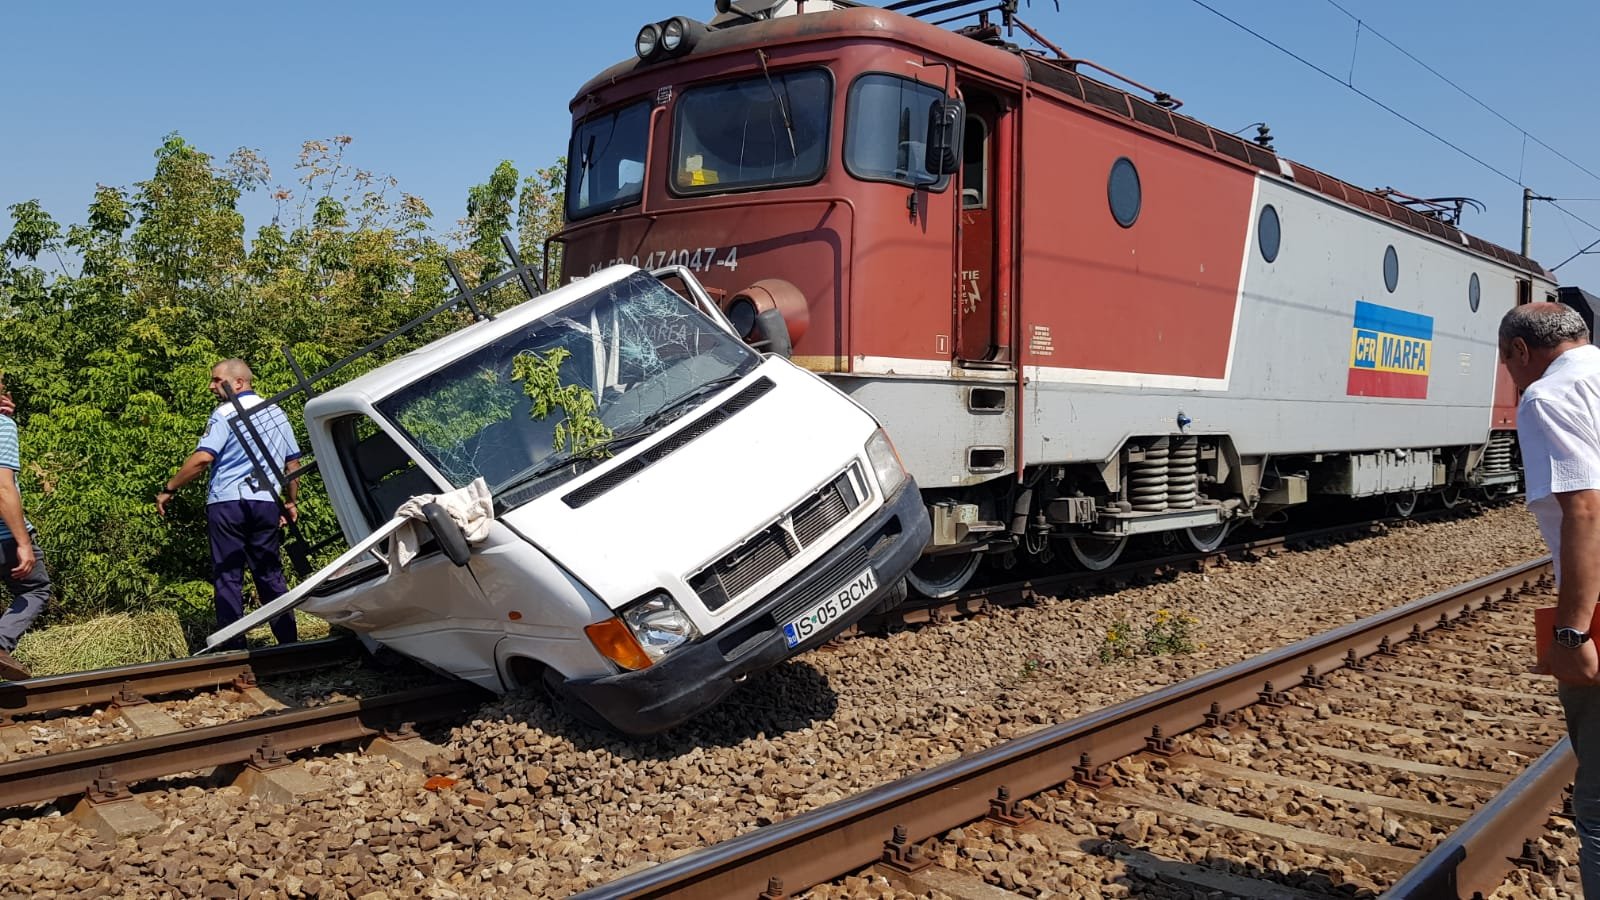  IMAGINI: Accident feroviar mortal! Un adolescent a sărit din mașină văzând trenul